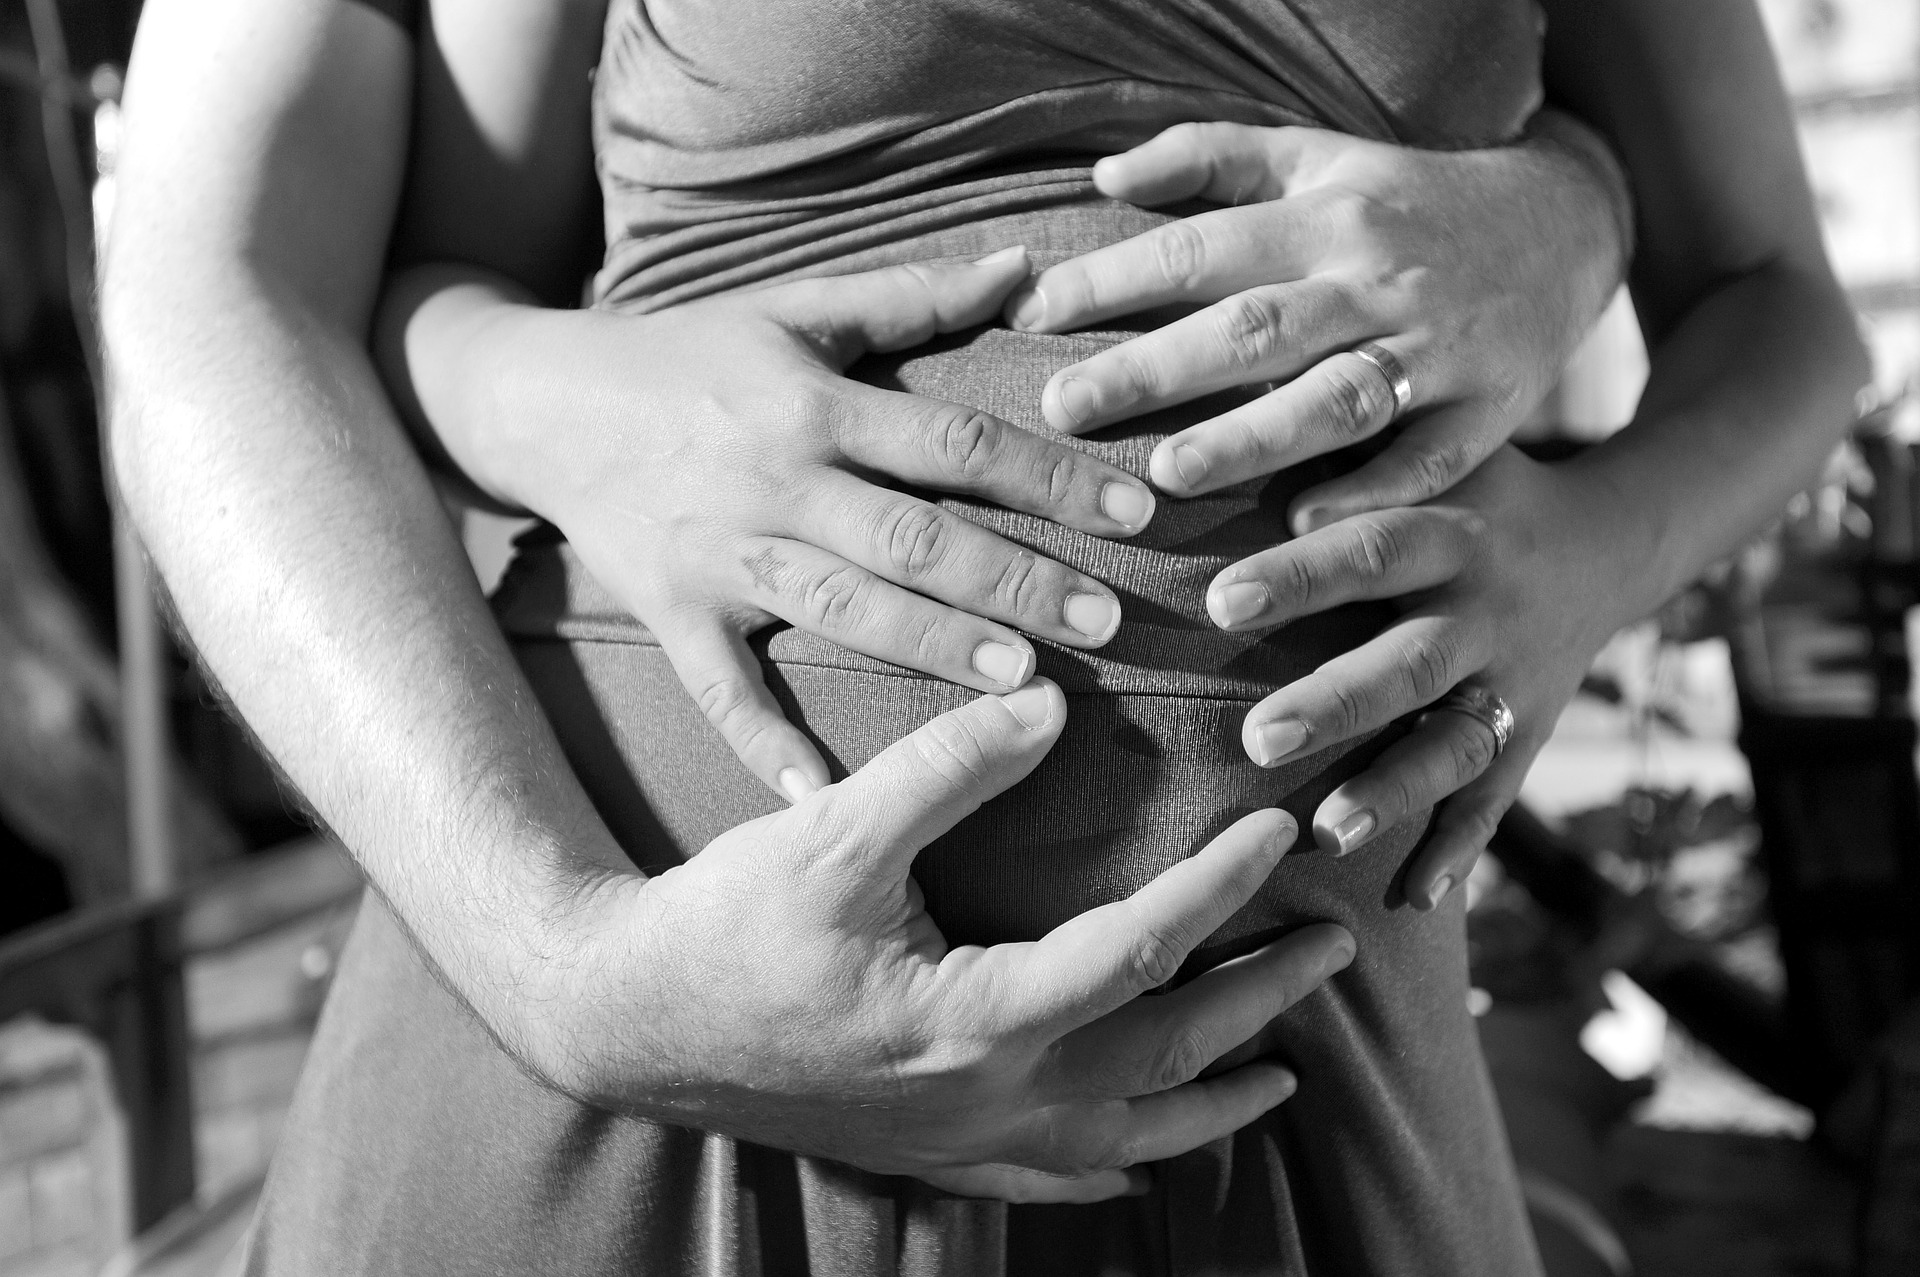 Annelik estetiği sonrası tekrar hamile kalmak sıkıntı yaratır mı?